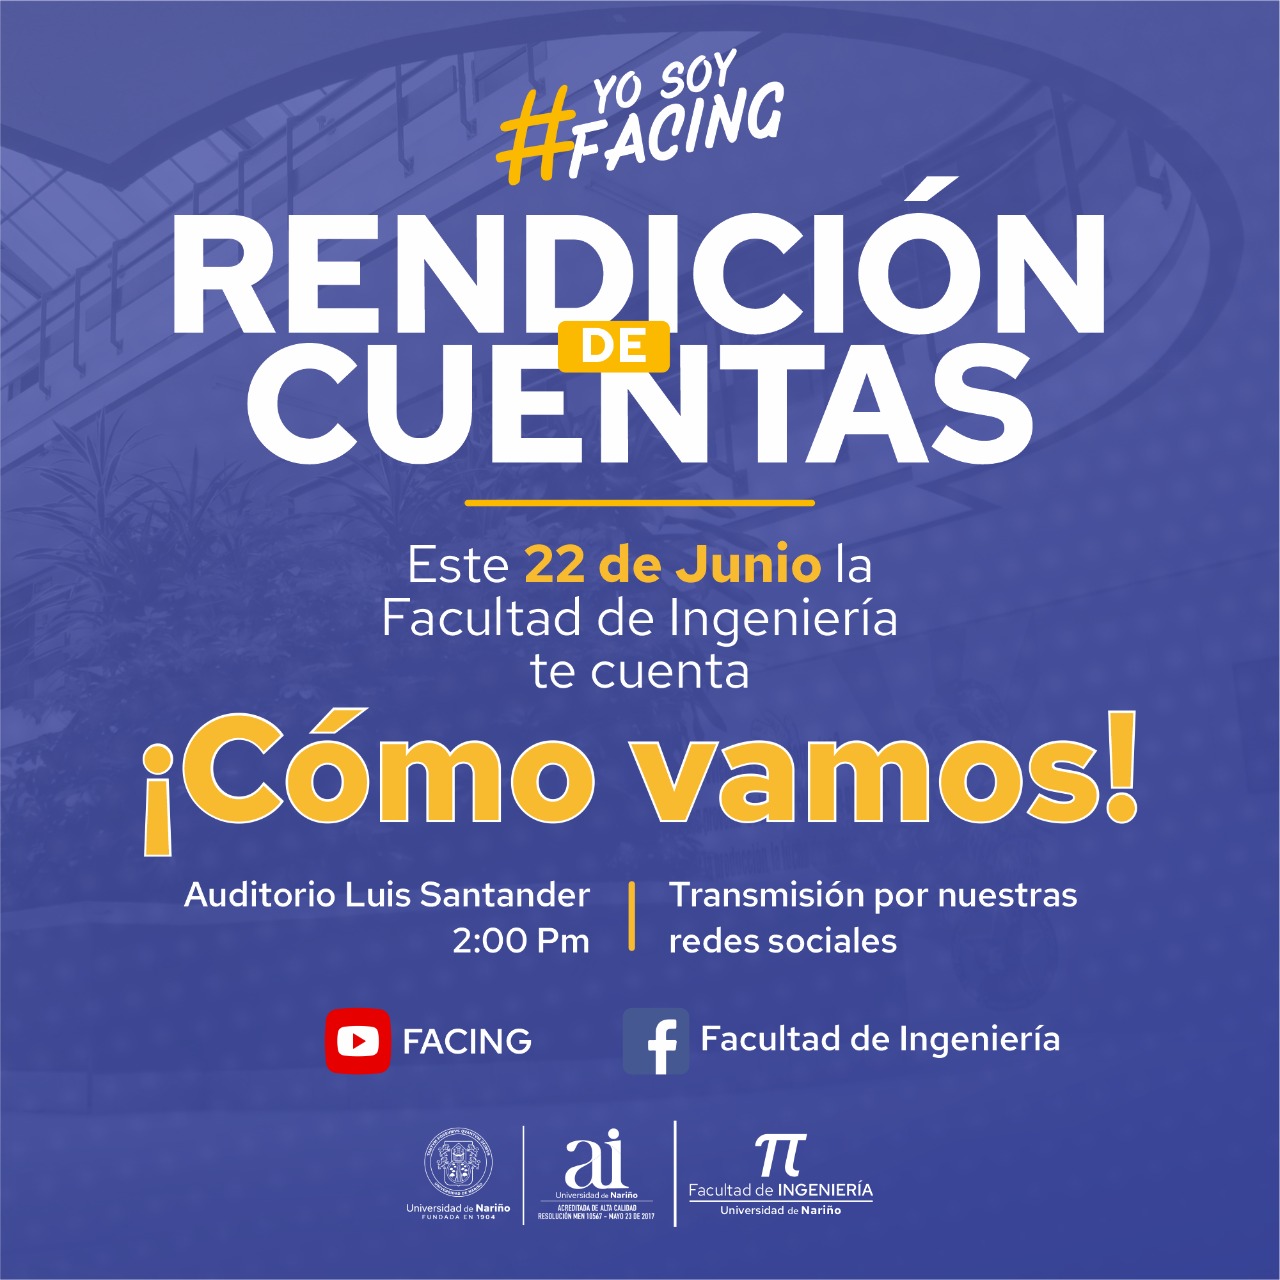 Rendicion_cuentas_FACING